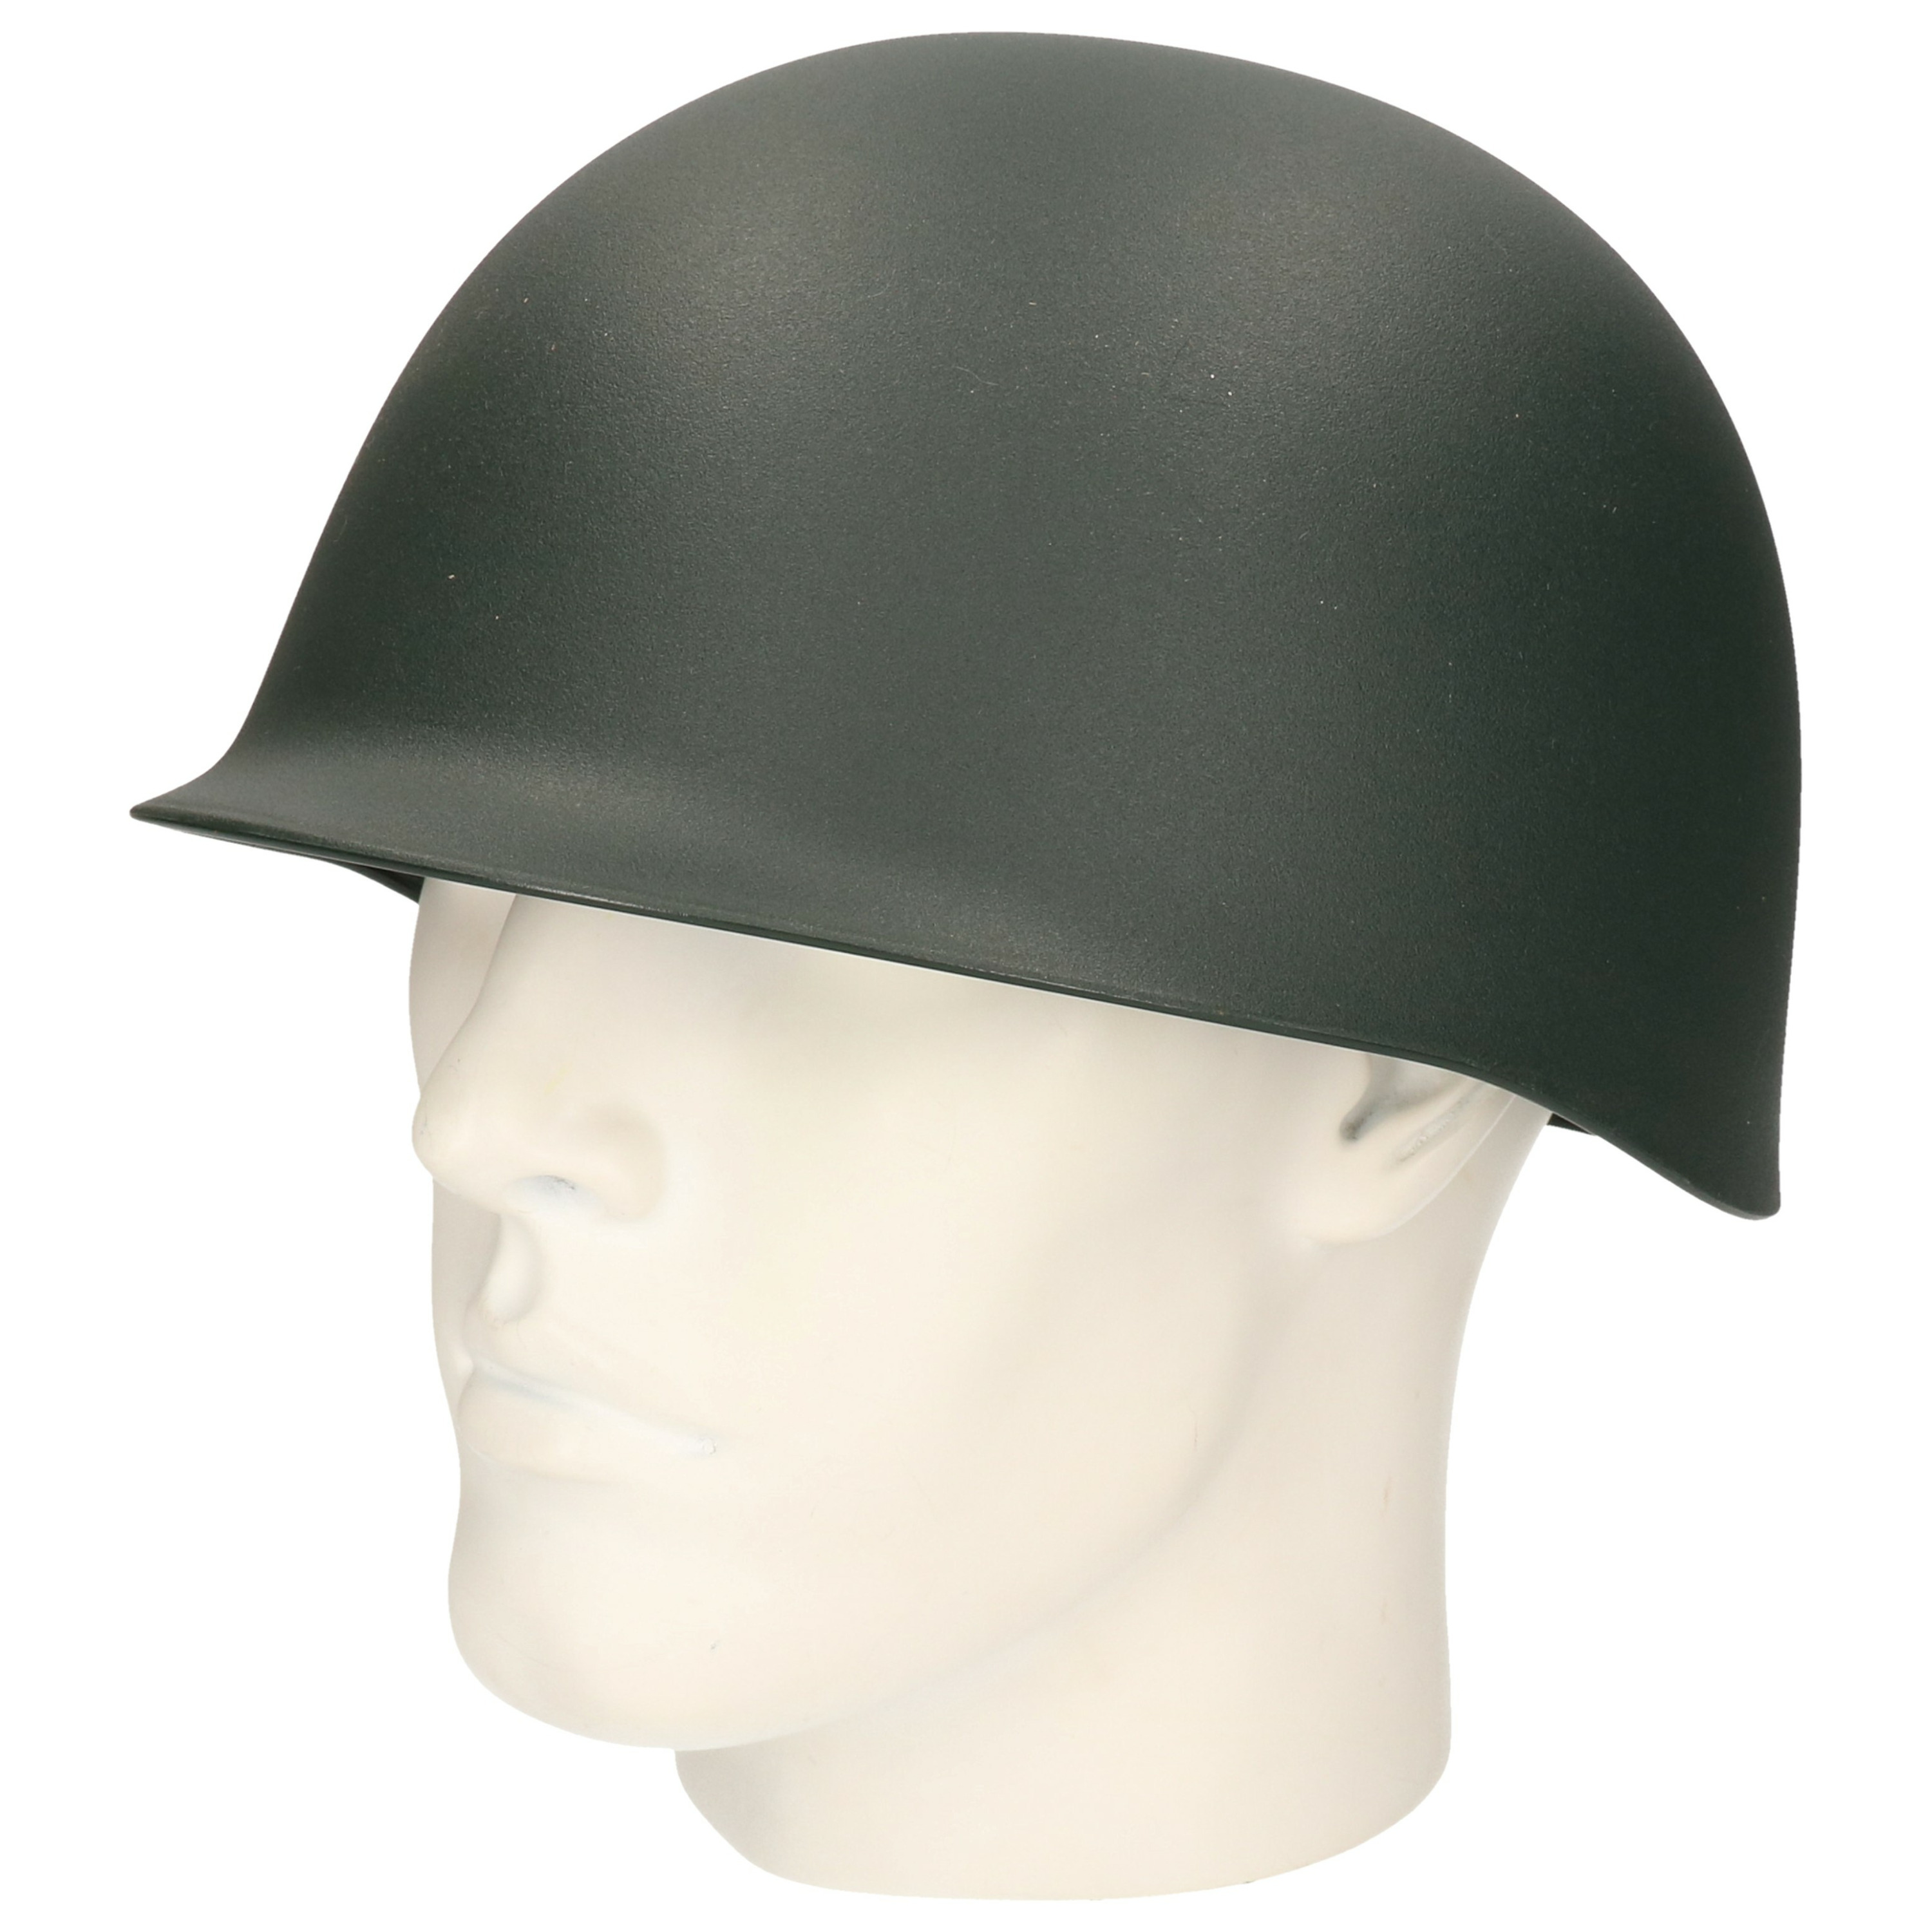 Camouflage helm voor volwassenen